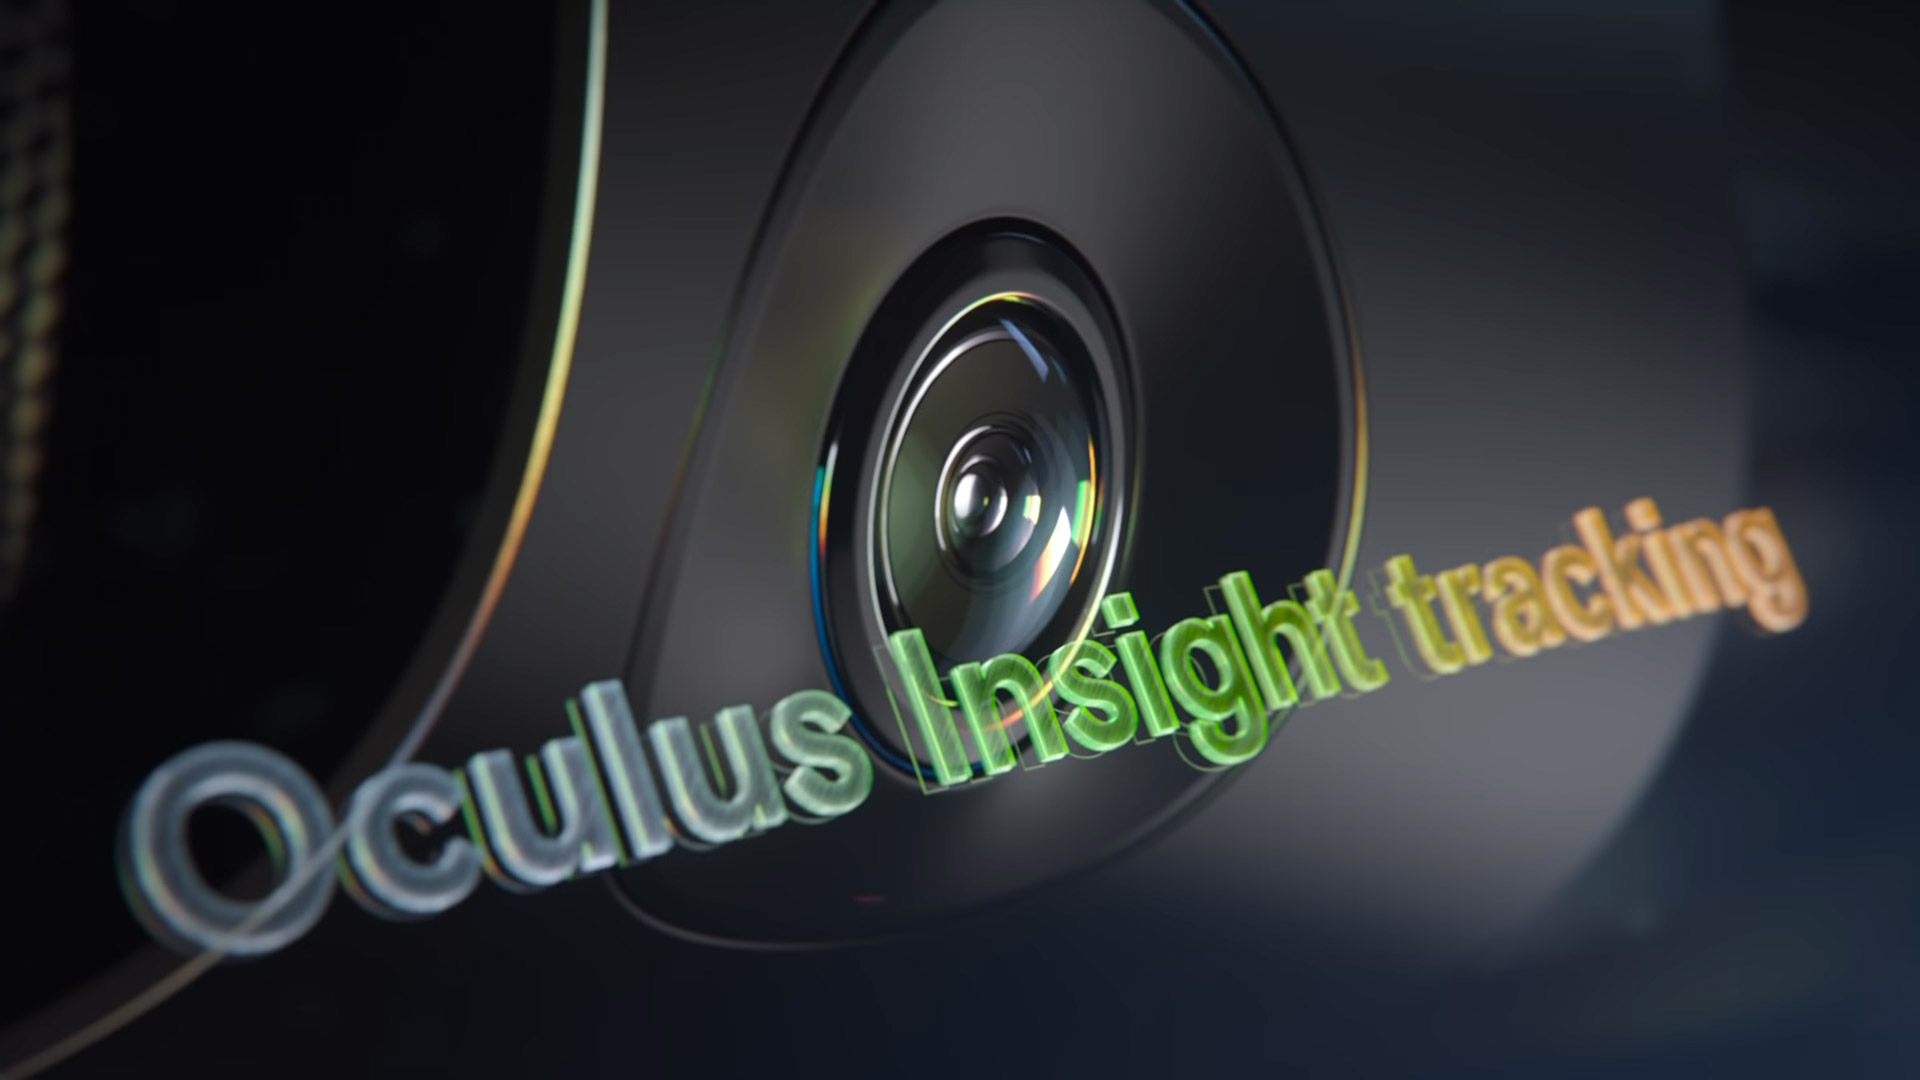 oculus quest 2 facebook reddit